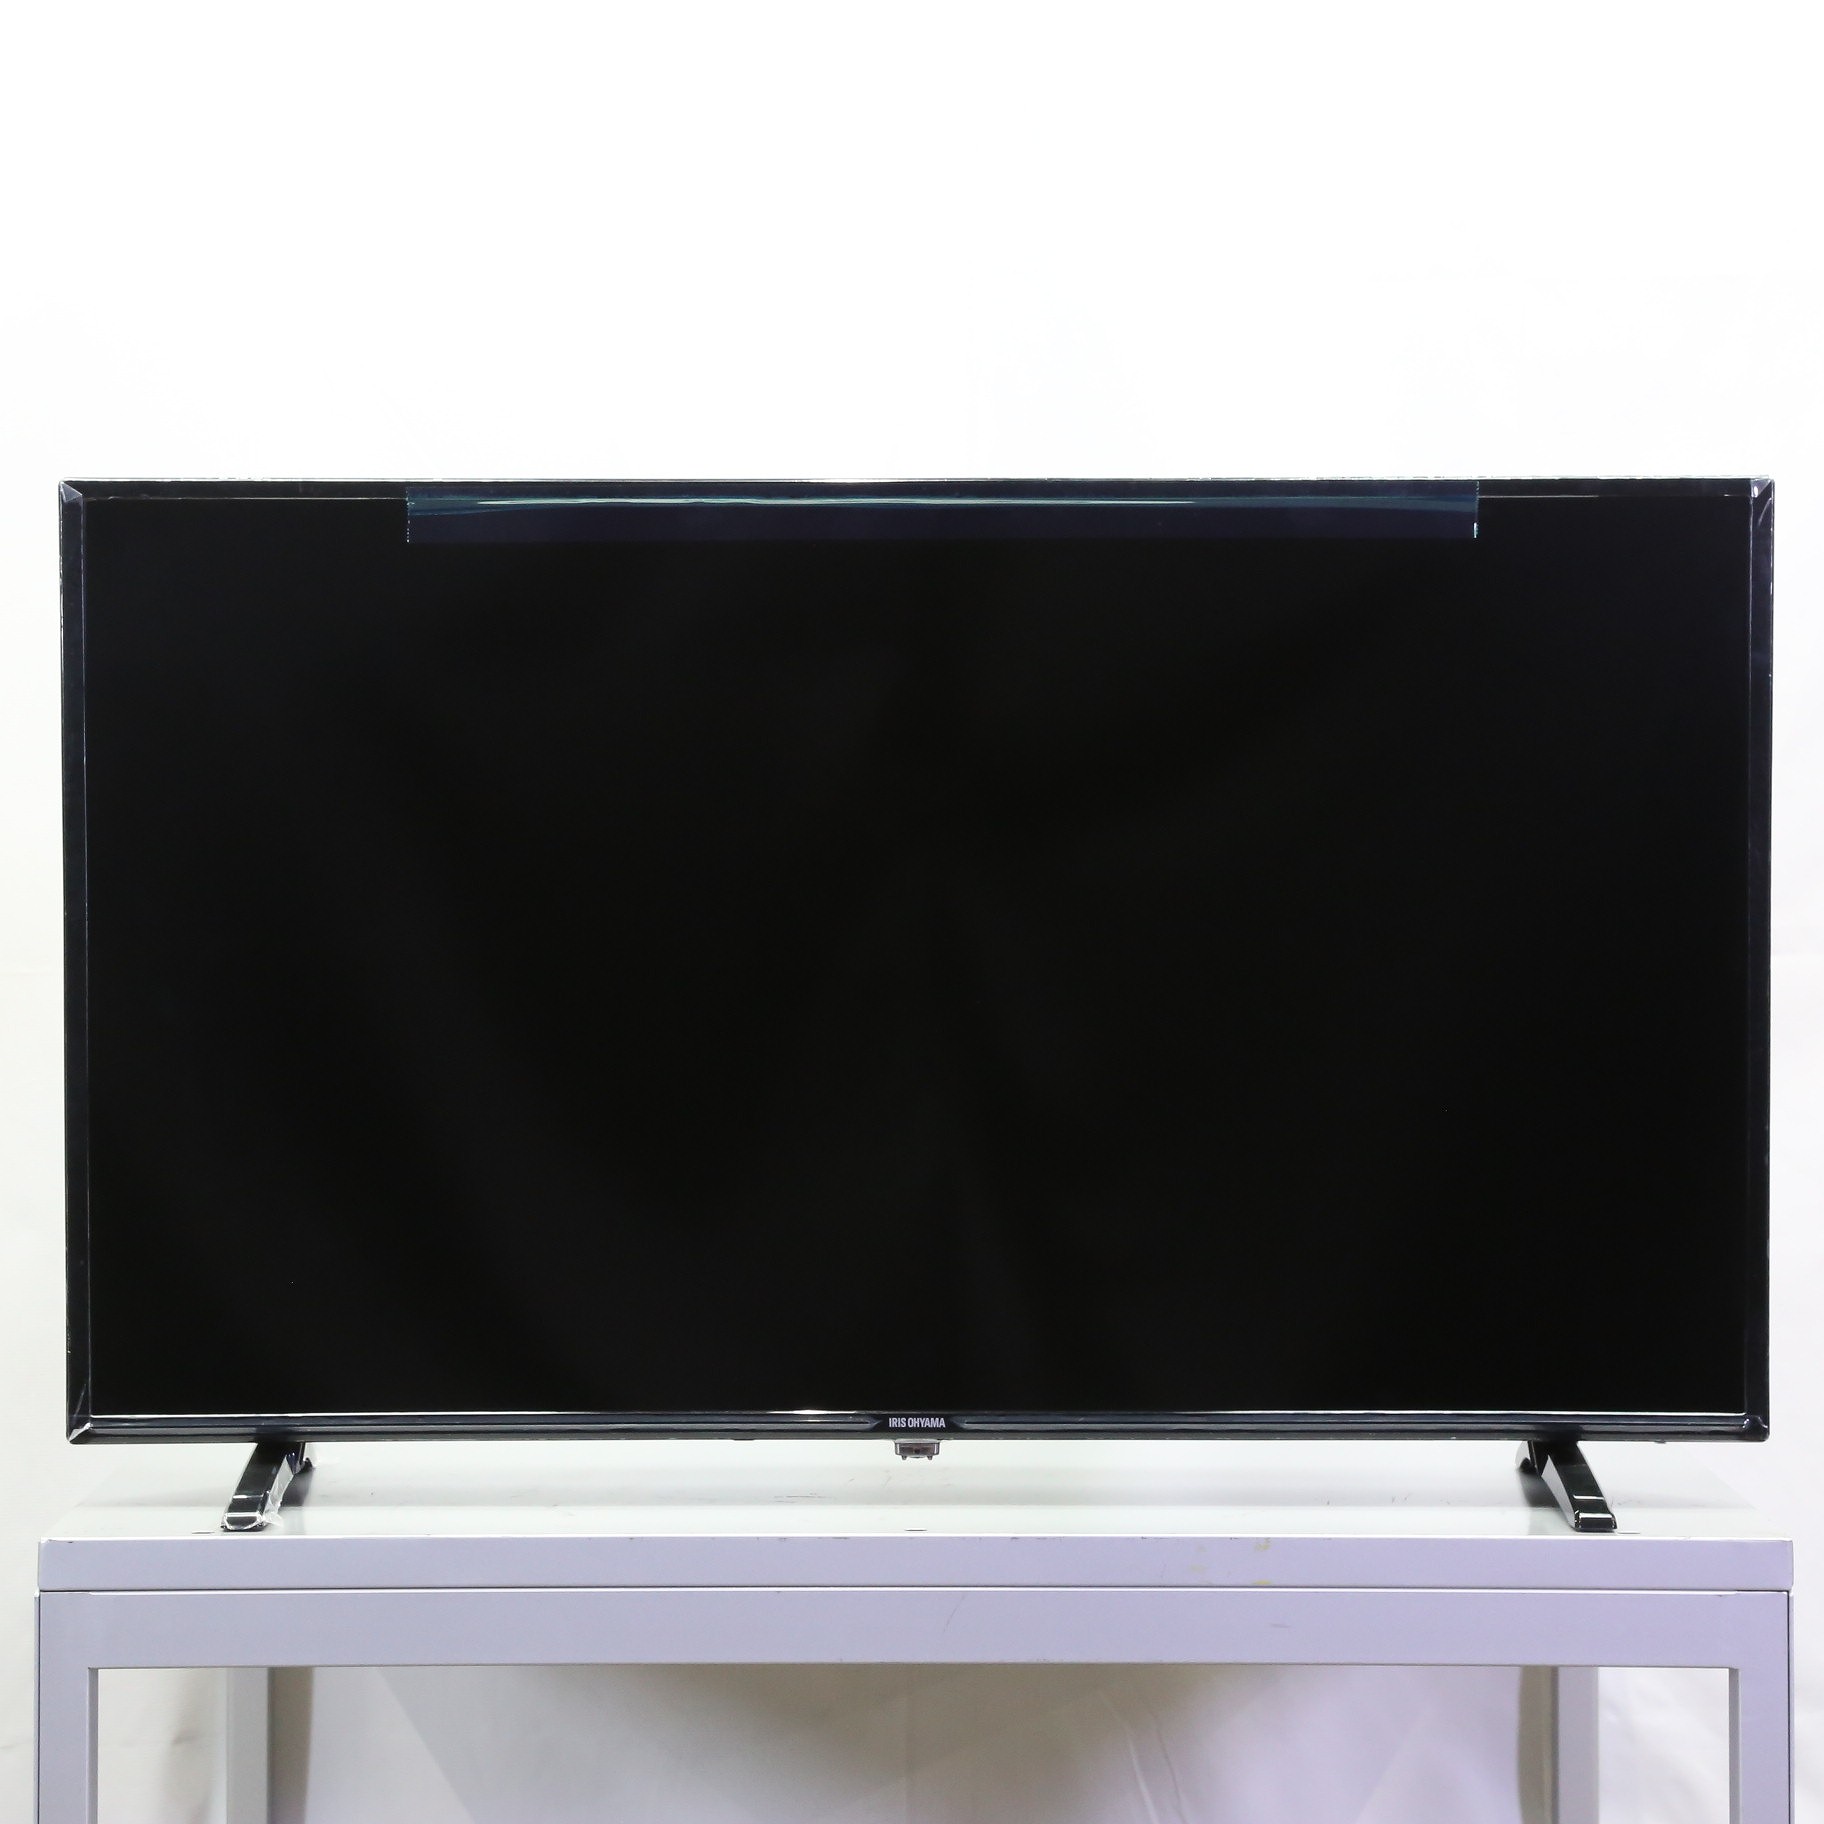 【買取格安】IRIS OHYAMA アイリスオーヤマ 液晶TV LT-40A420 40V型 テレビ